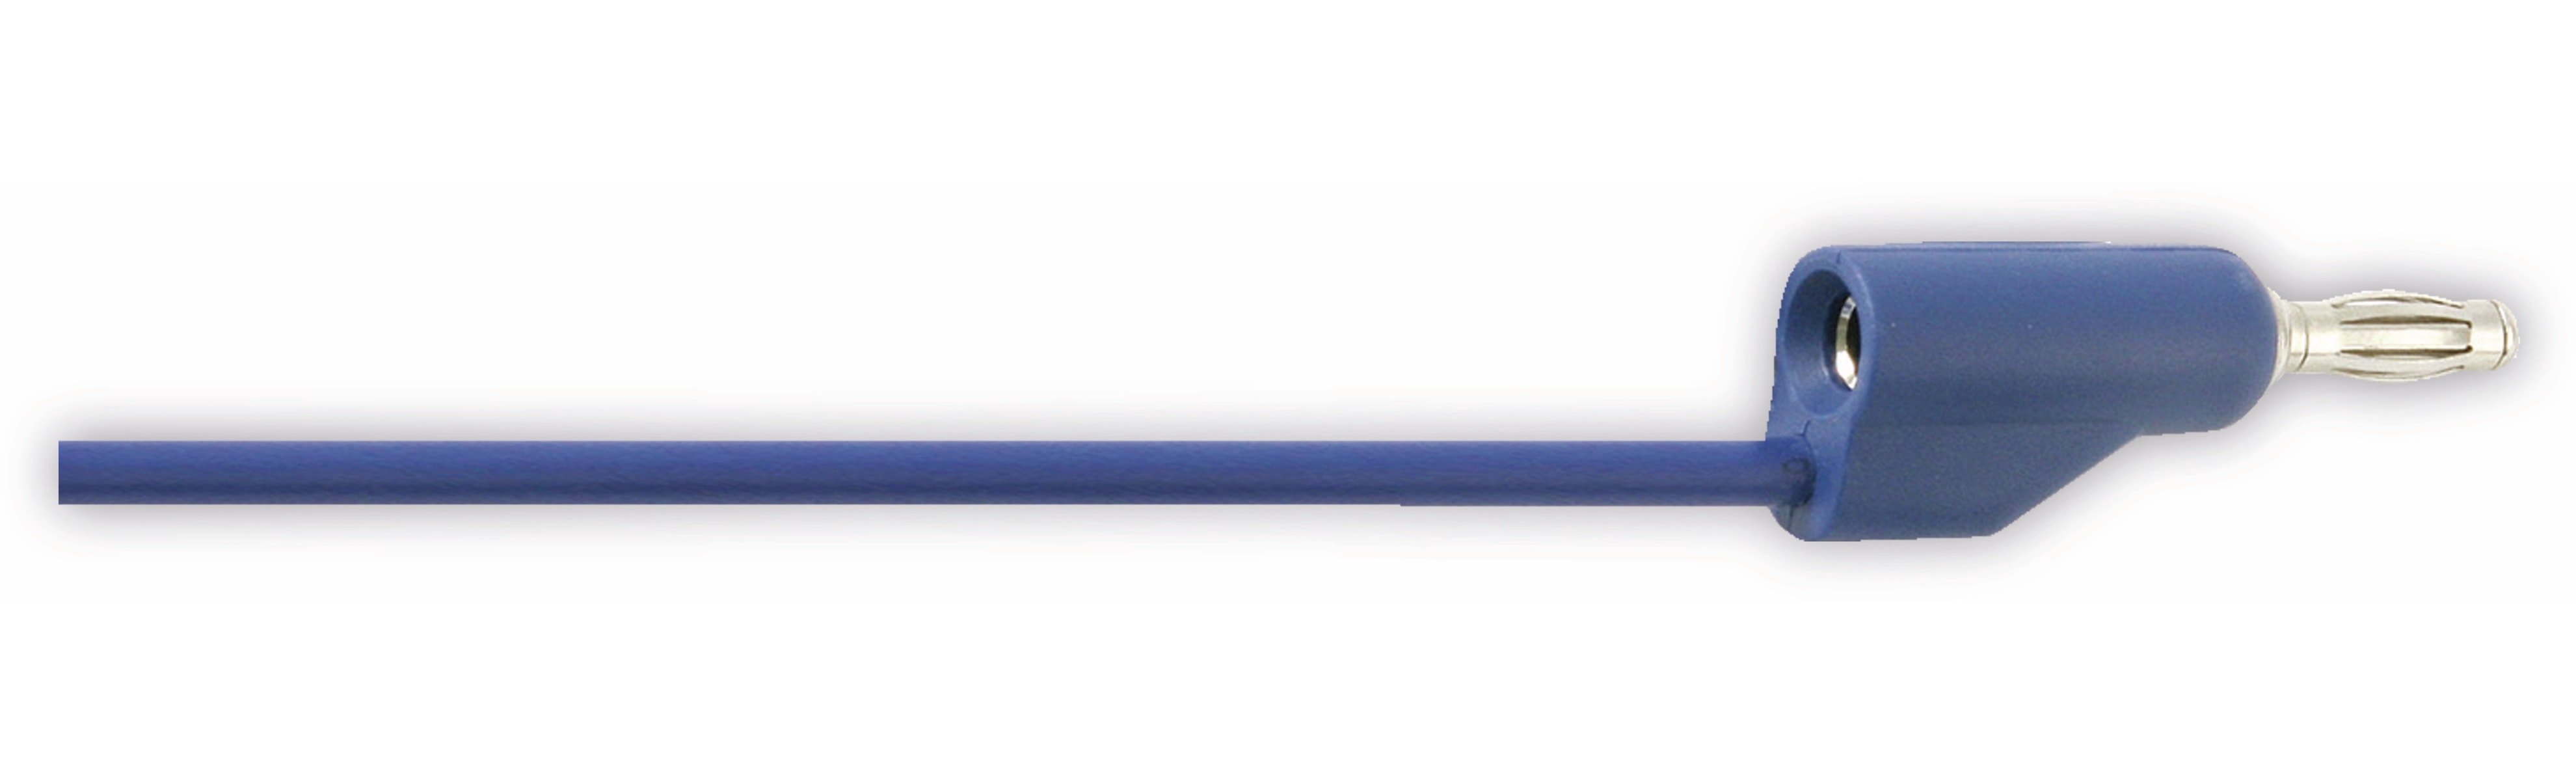 Messleitung mit Büschelsteckern, 0,5 m, blau